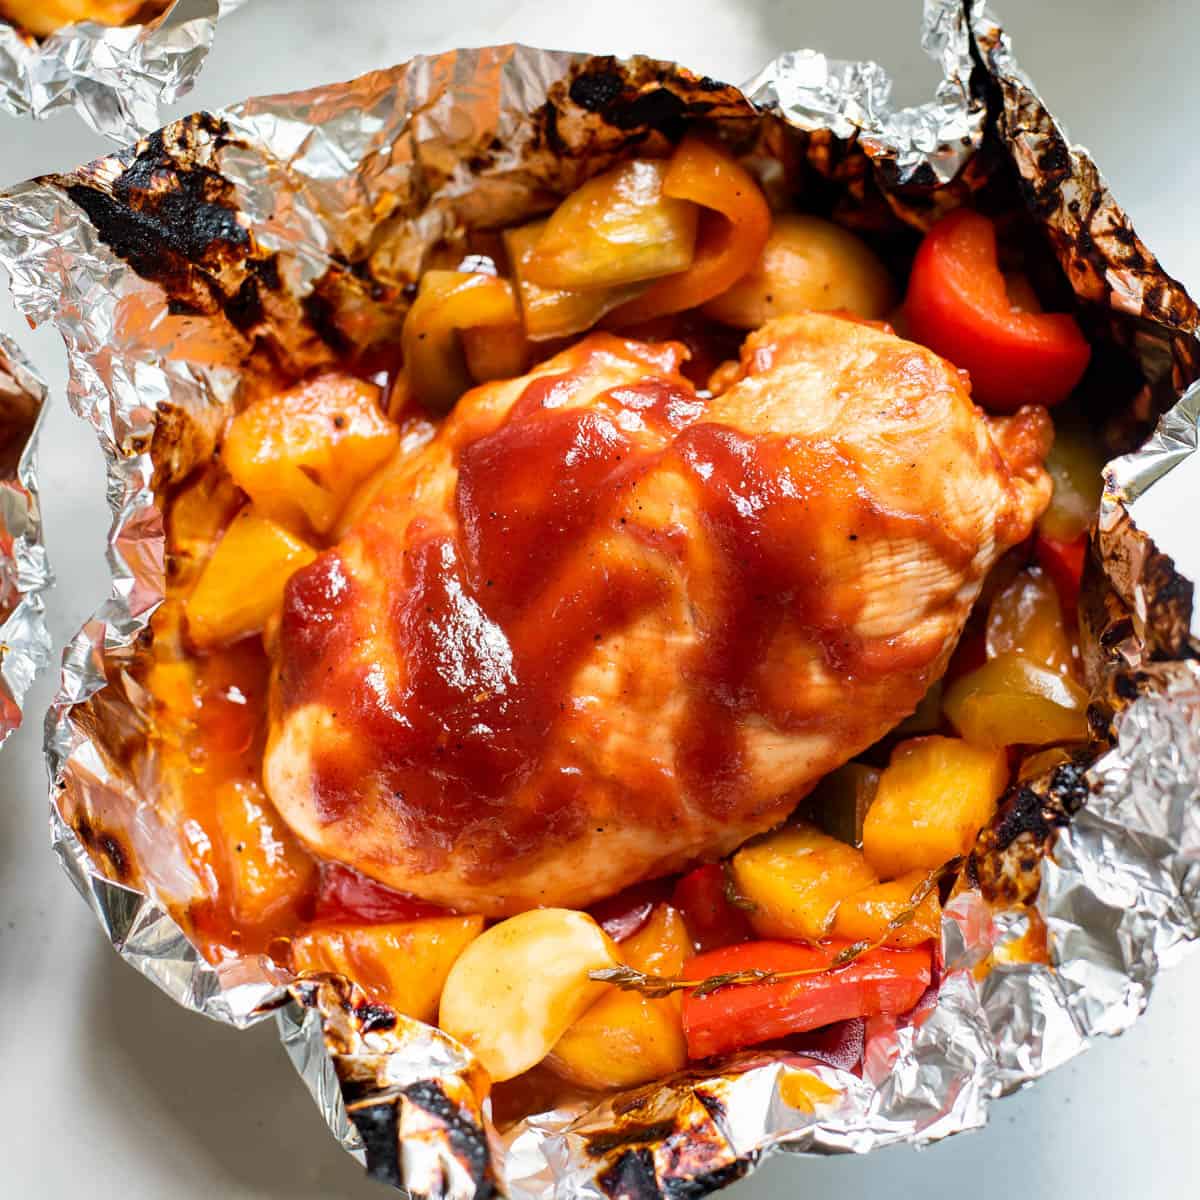 https://easydinnerrecipes.com/wp-content/uploads/2022/04/Pineapple-BBQ-Chicken-Foil-Packets-10.jpg